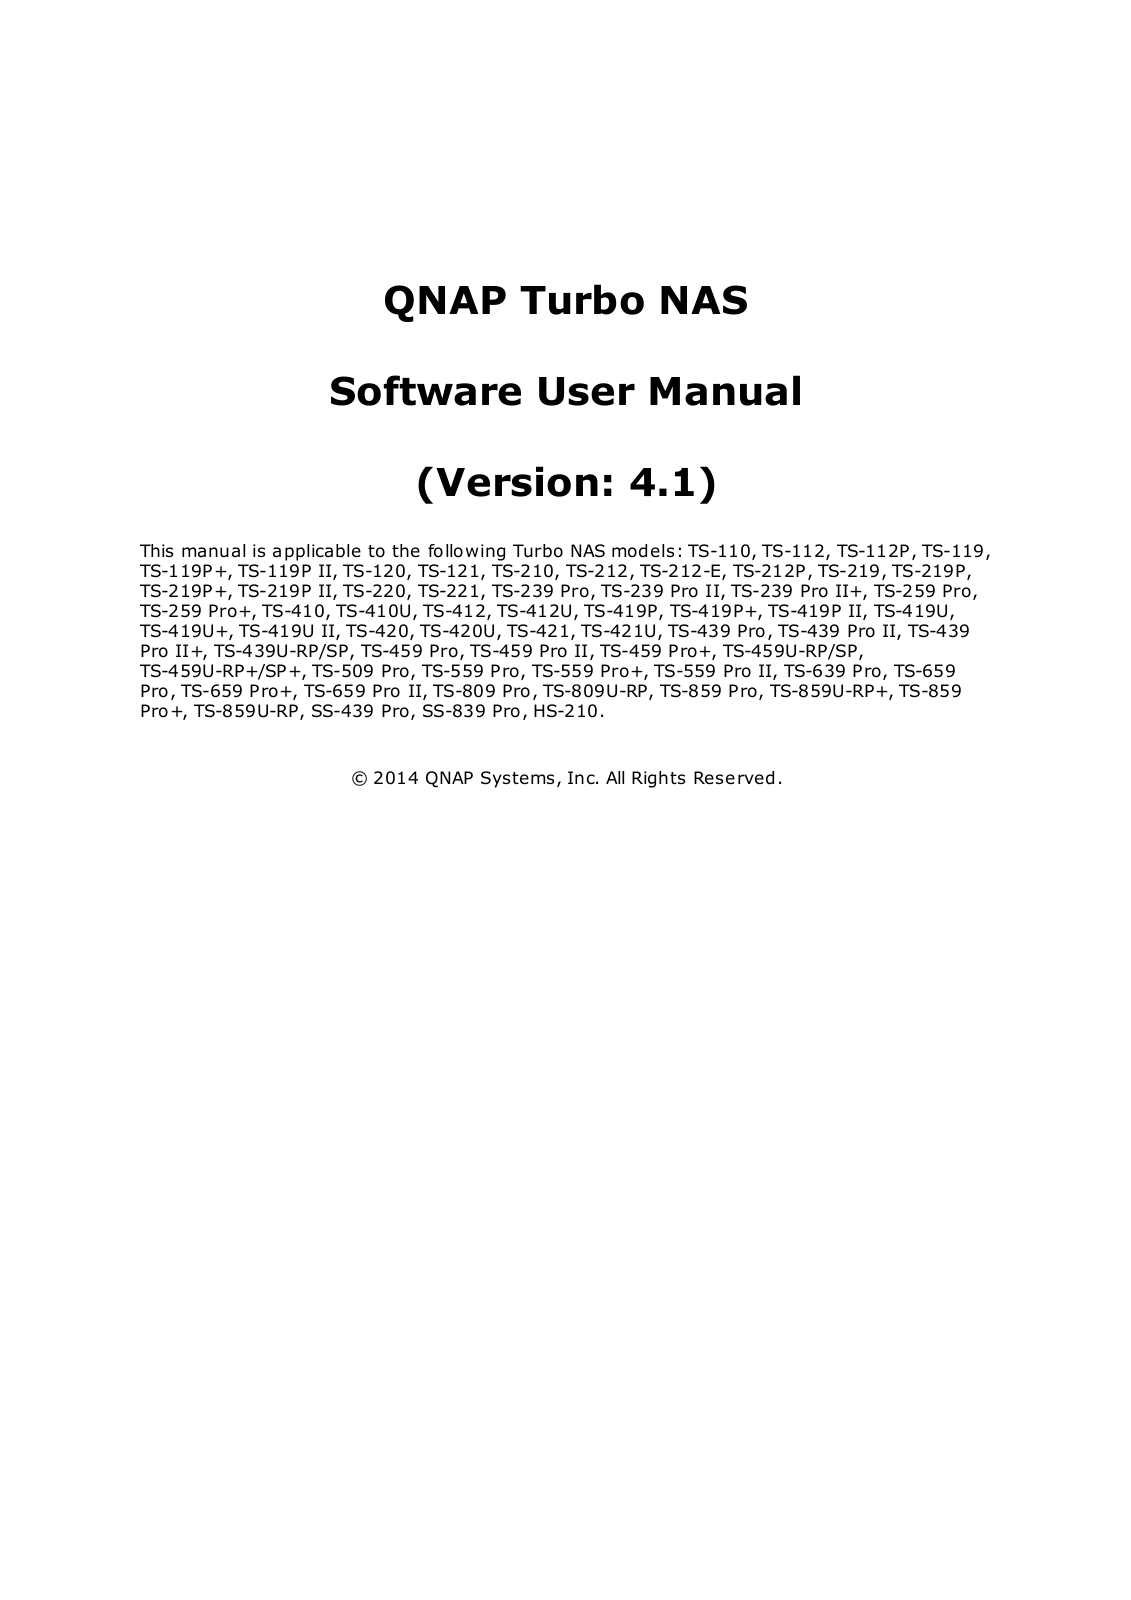 QNAP TS-212P User Manual